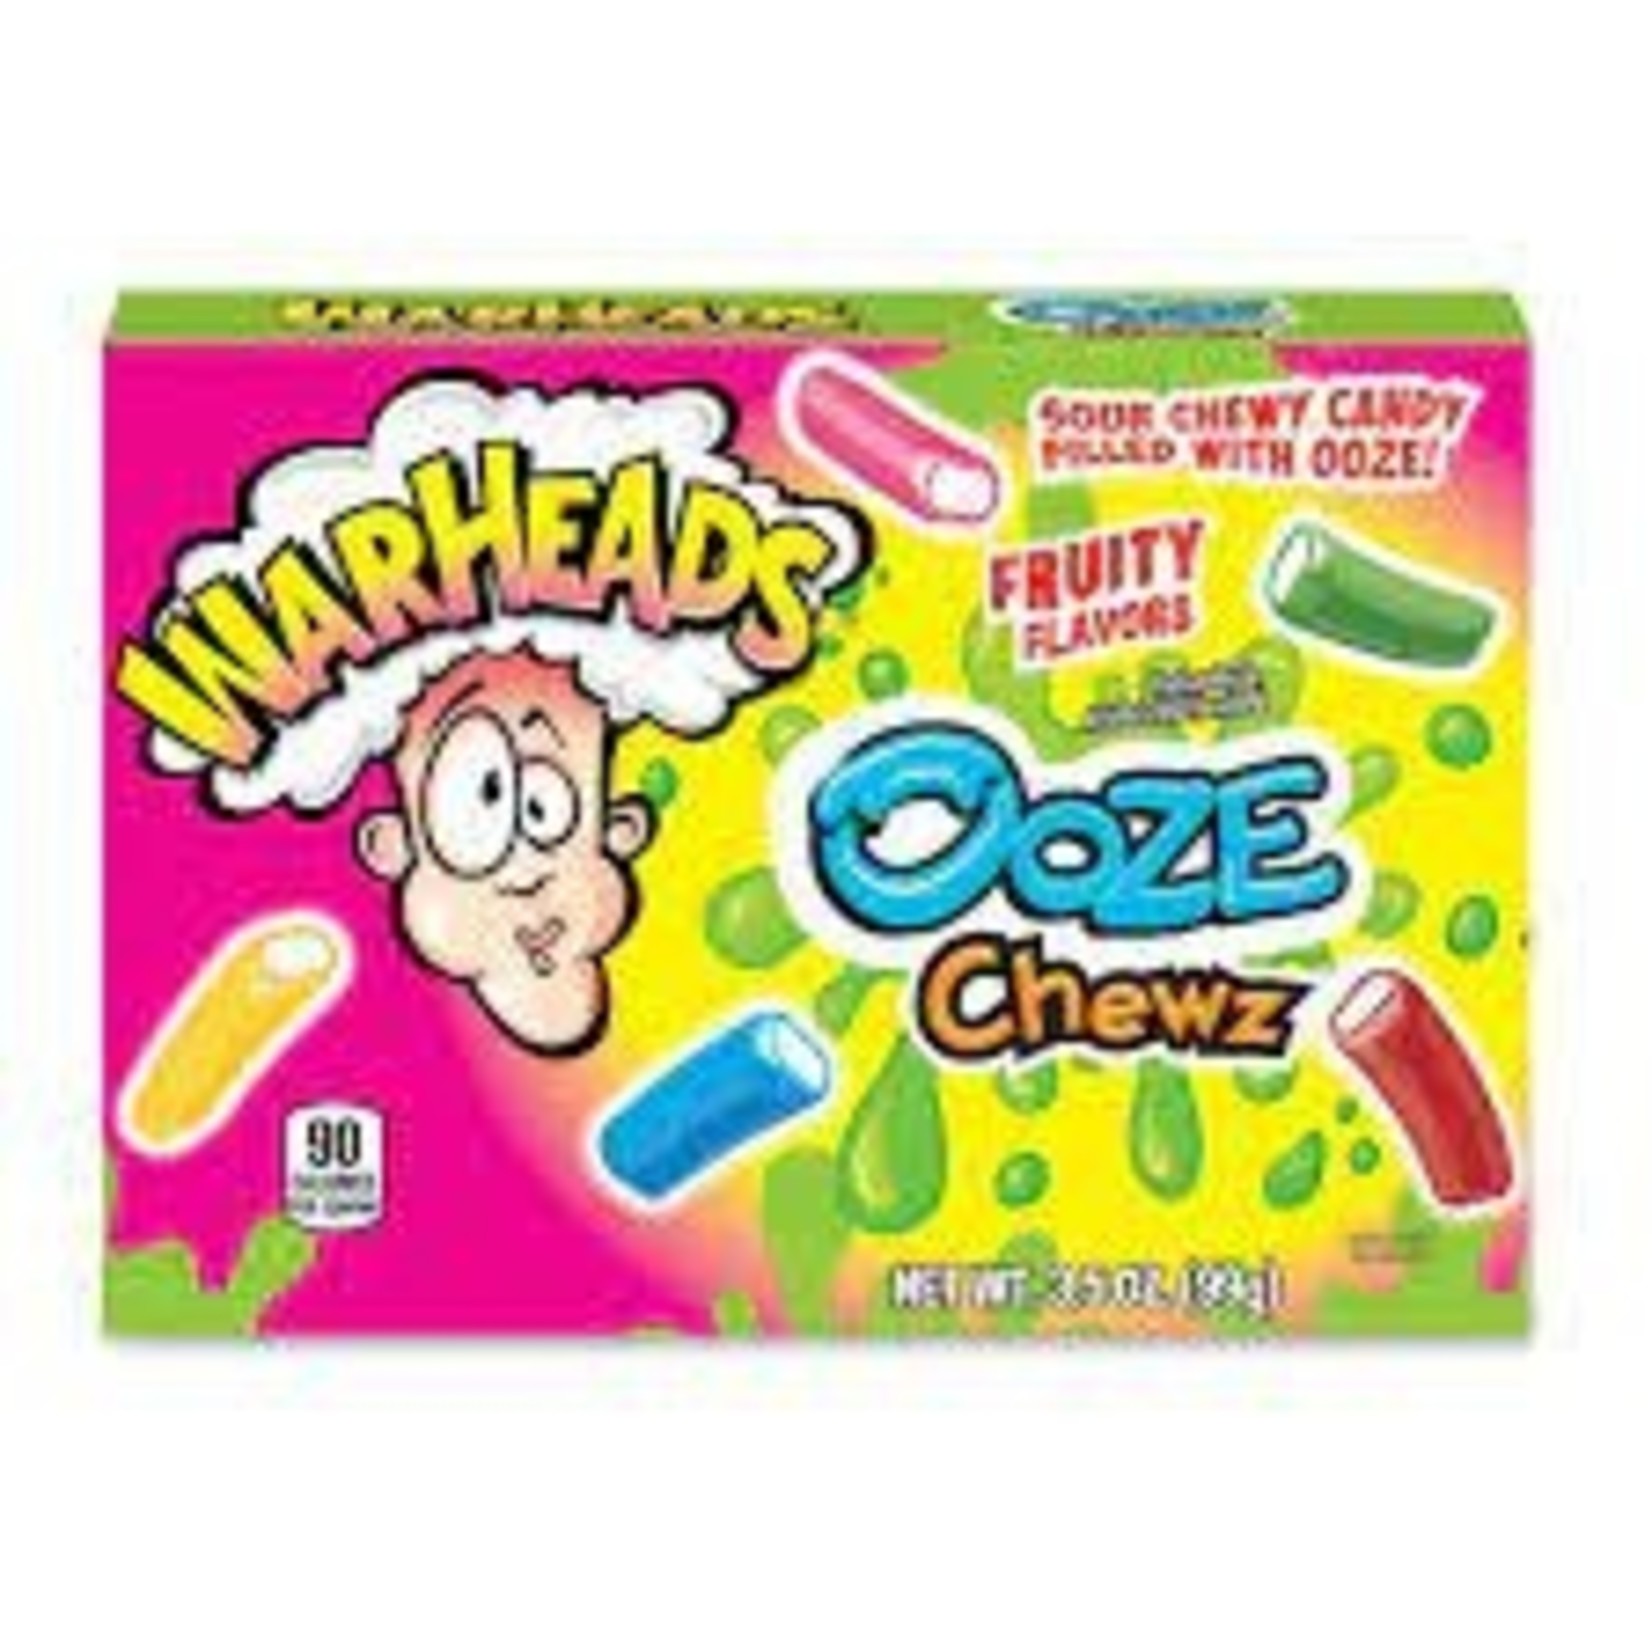 Ooze Chews Box 3.5oz